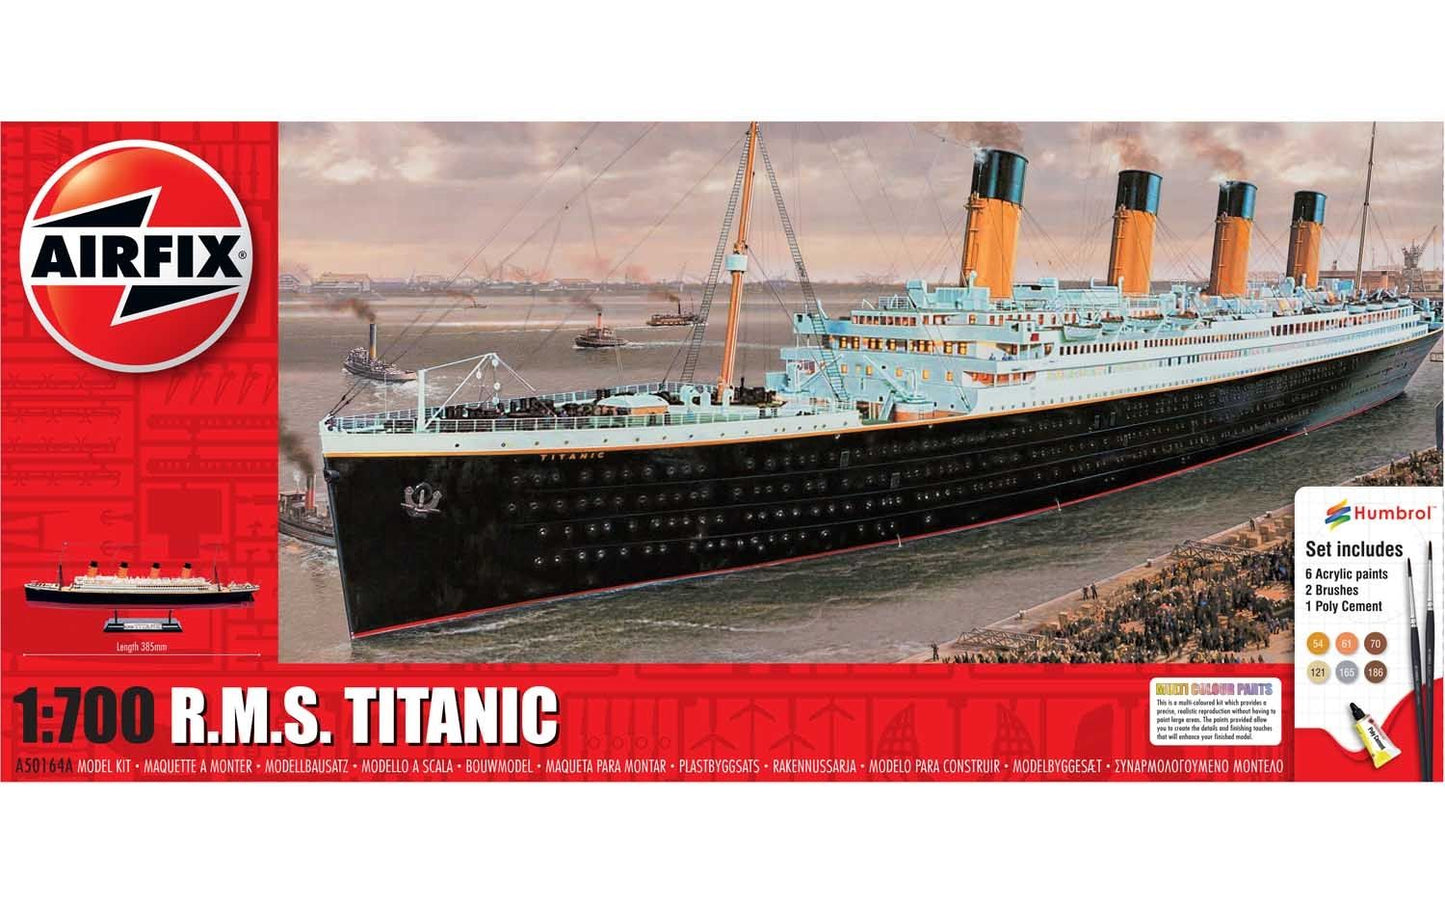 Airfix RMS Titanic Gift Set 1:700